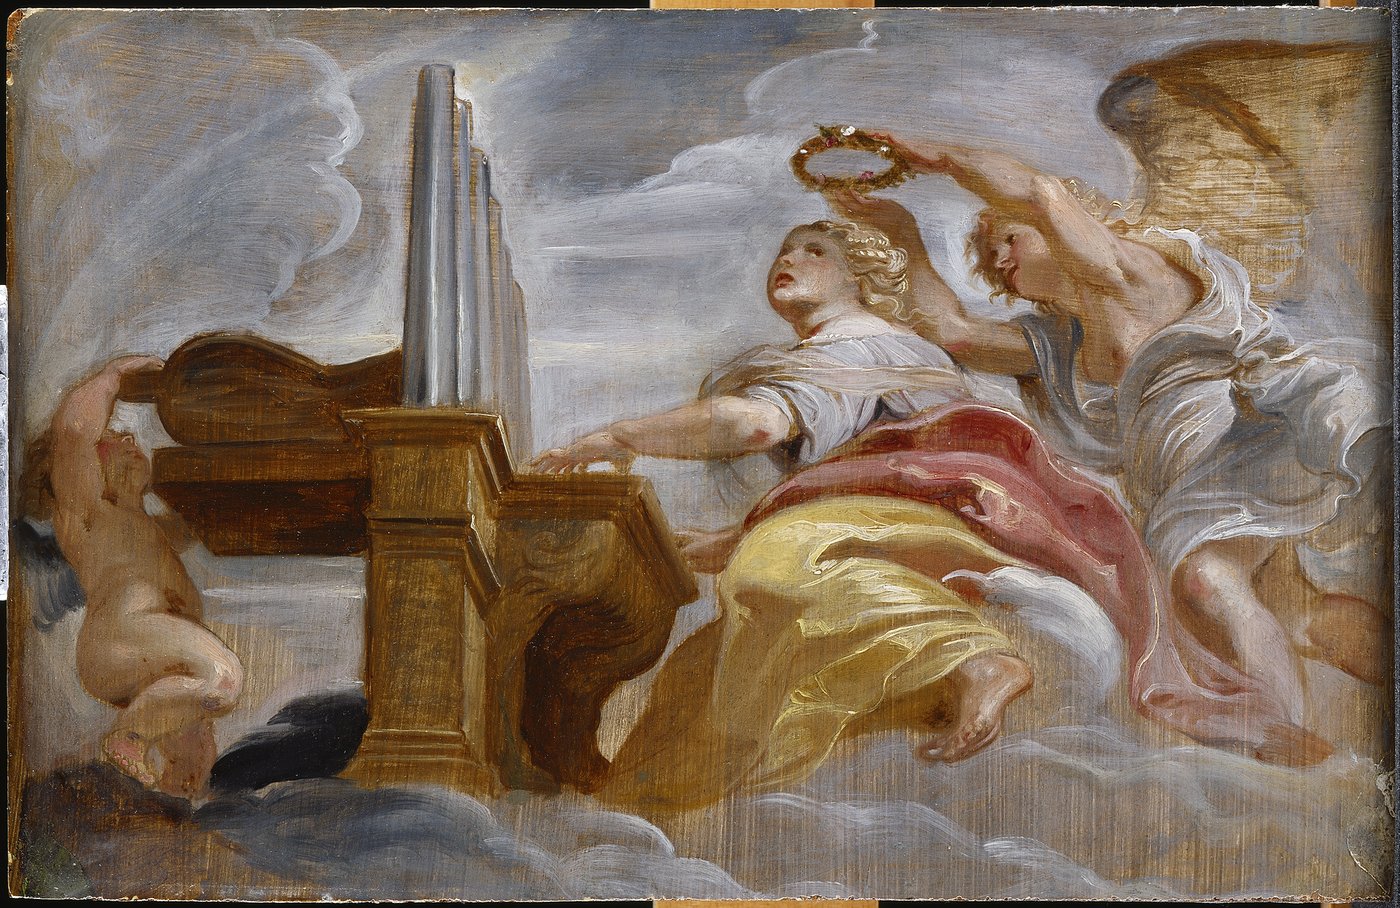 Auf dem querformatigen Gemälde sind die Orgel spielende heilige Cäcilia mit zwei Engeln dargestellt. Aufgrund der starken Untersicht entsteht der Eindruck, als ob man von unten auf die Szene schauen würde. Einer der Engel steht hinter der heiligen Cäcilia und hält einen Blumenkranz über ihren Kopf. Die Szene ist in Wolken eigebettet. Links im Bild steht ein kleiner Putto, der nach oben zum hinteren Teil der Orgel greift. Die Pinselstriche wirken skizzenhaft und stellenweise schimmert das Holz, auf dem das Bild gemalt wurde, hervor. Das Bild wirkt durch das flatternde voluminöse Gewand und die vielen Stofffalten sowie Wolkenformationen dynamisch.